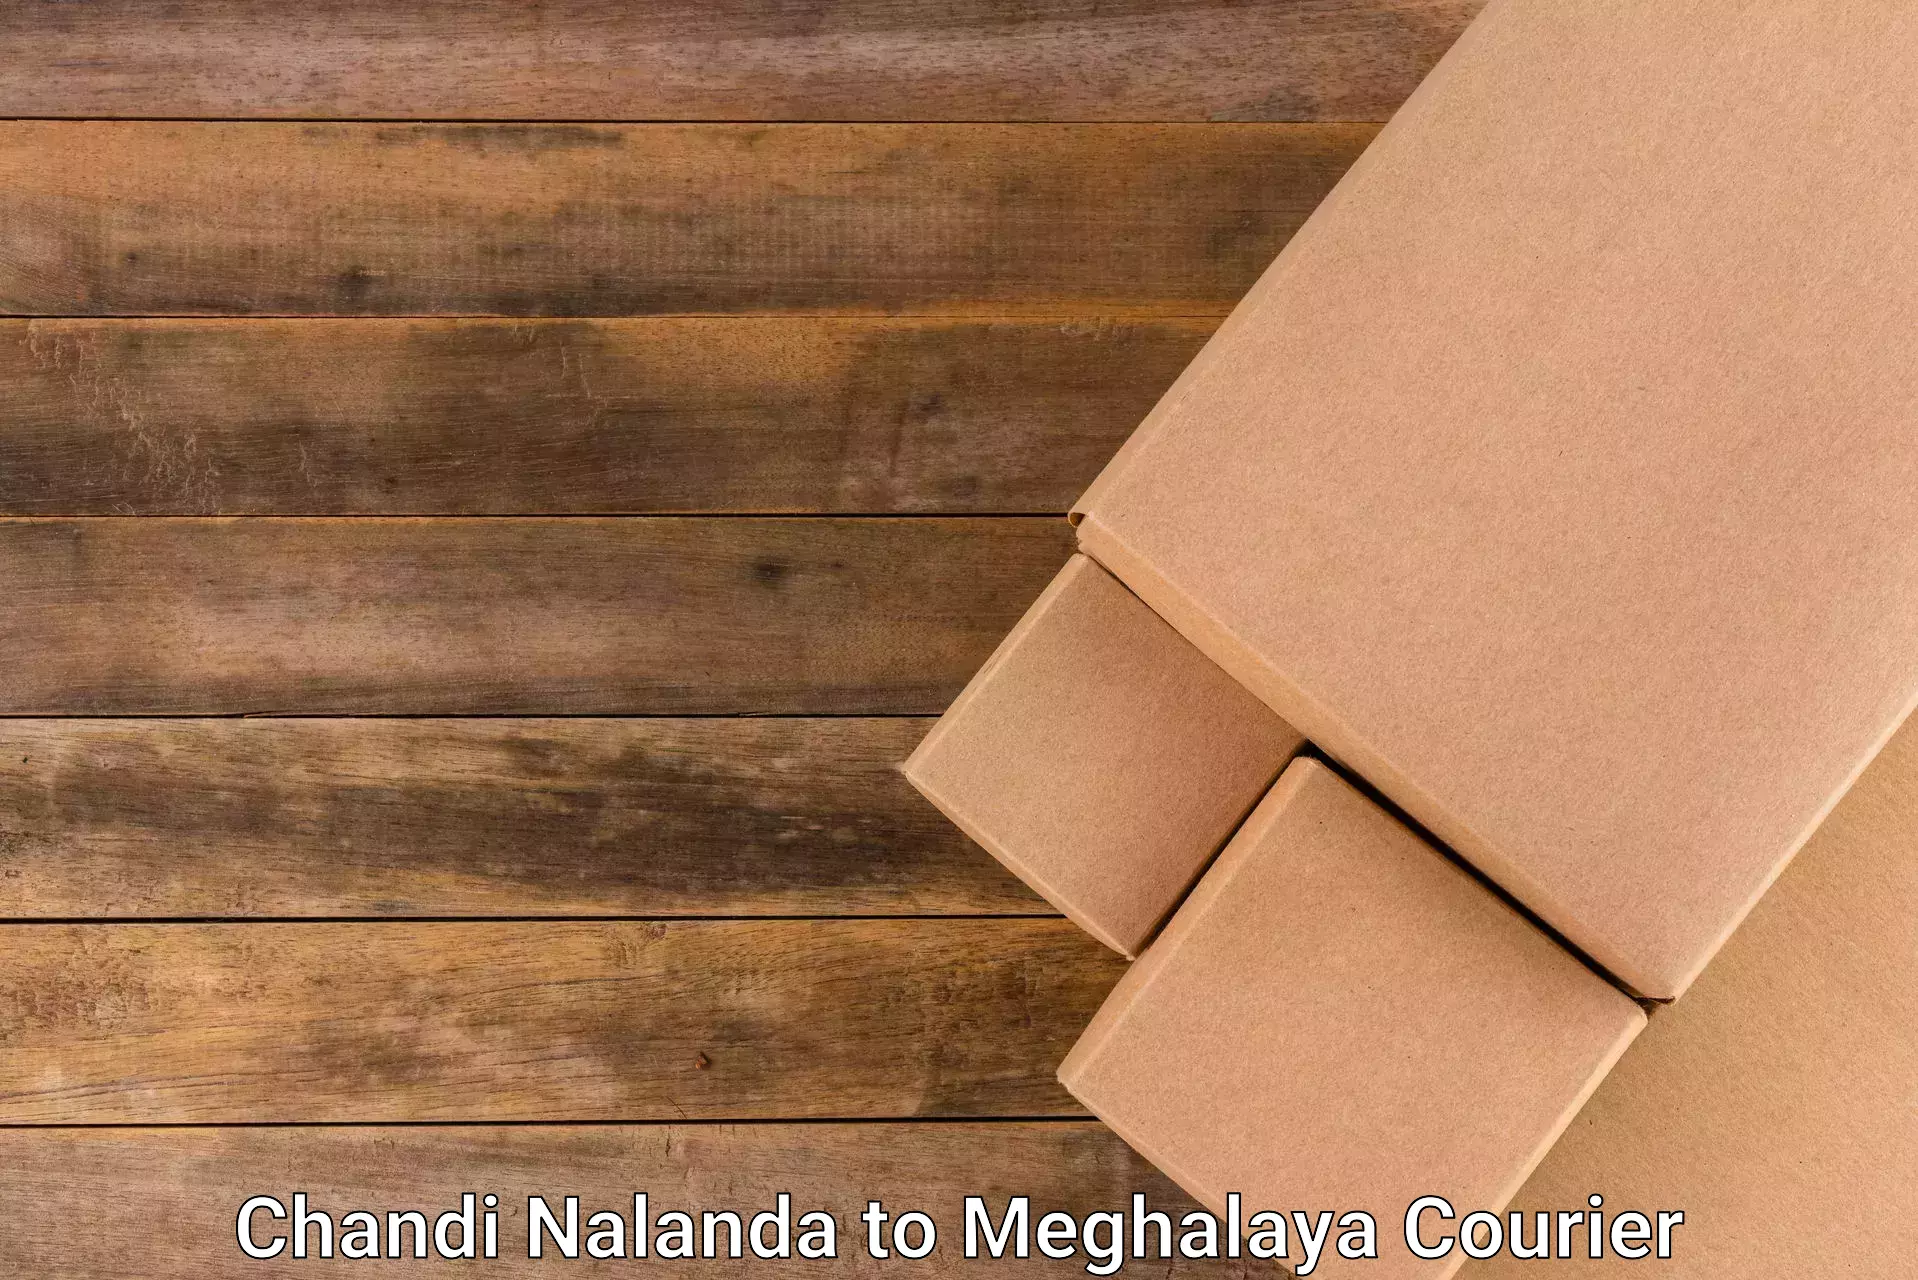 Express logistics service in Chandi Nalanda to Meghalaya